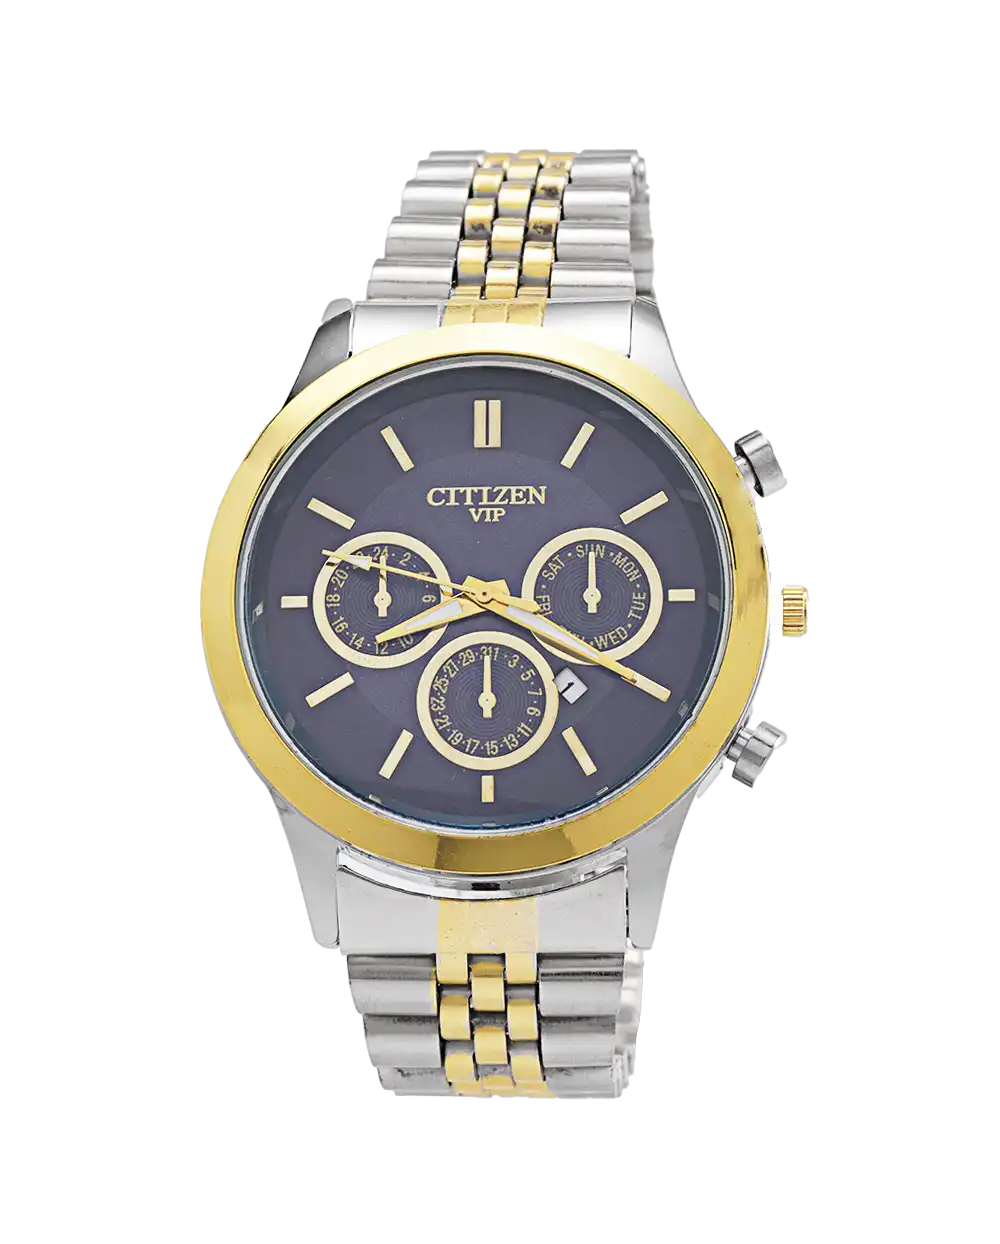 خرید ساعت مچی مردانه سیتیزن CITIZEN طرح VIP مدل 1734 با بهترین قیمت به همراه جعبه ی ساعت و ارسال رایگان به سراسر ایران | ساعت citizen